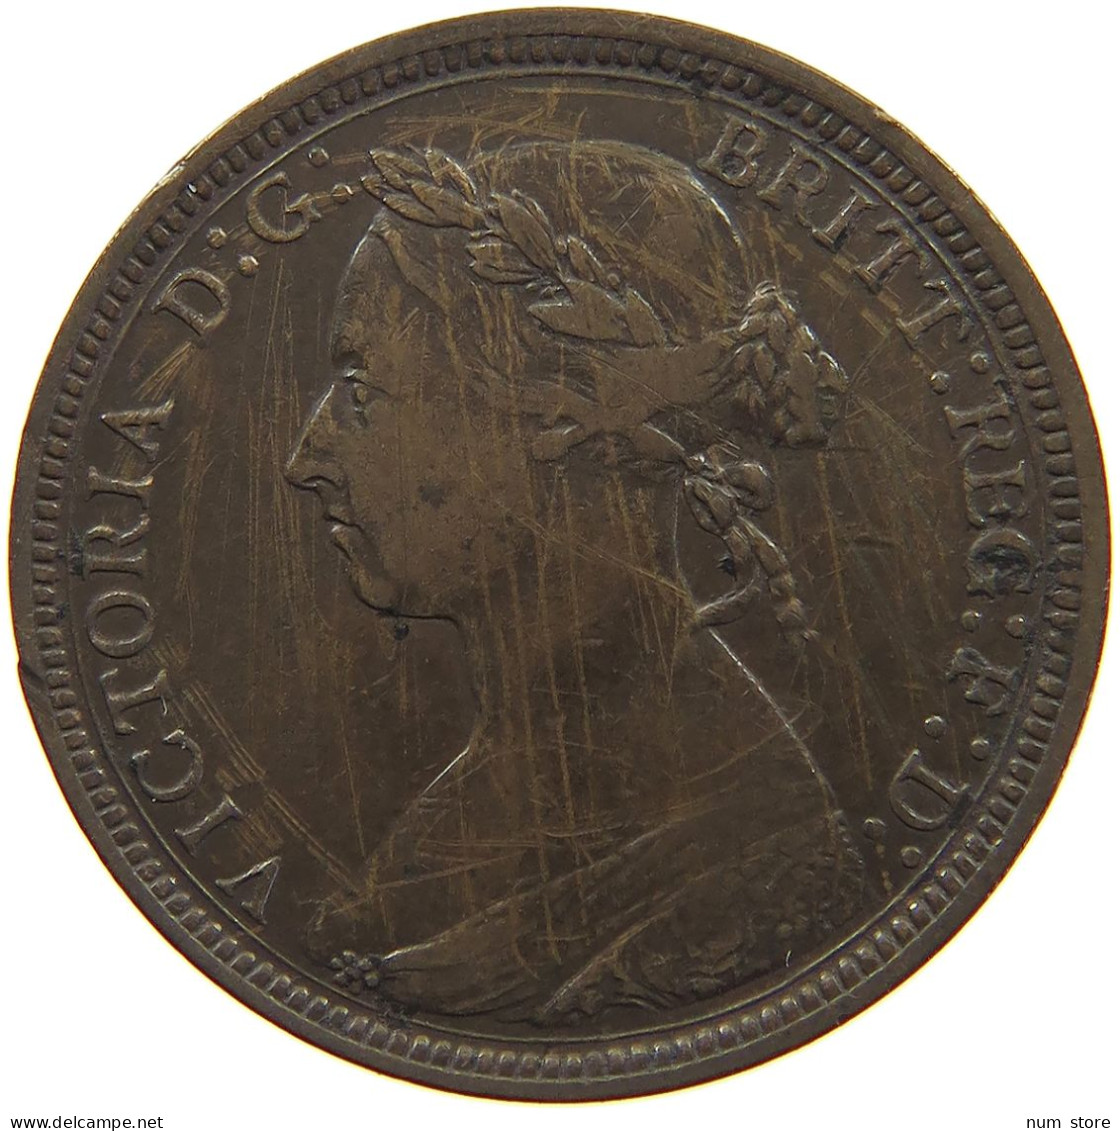 GREAT BRITAIN HALFPENNY 1887 Victoria 1837-1901 #c061 0023 - C. 1/2 Penny